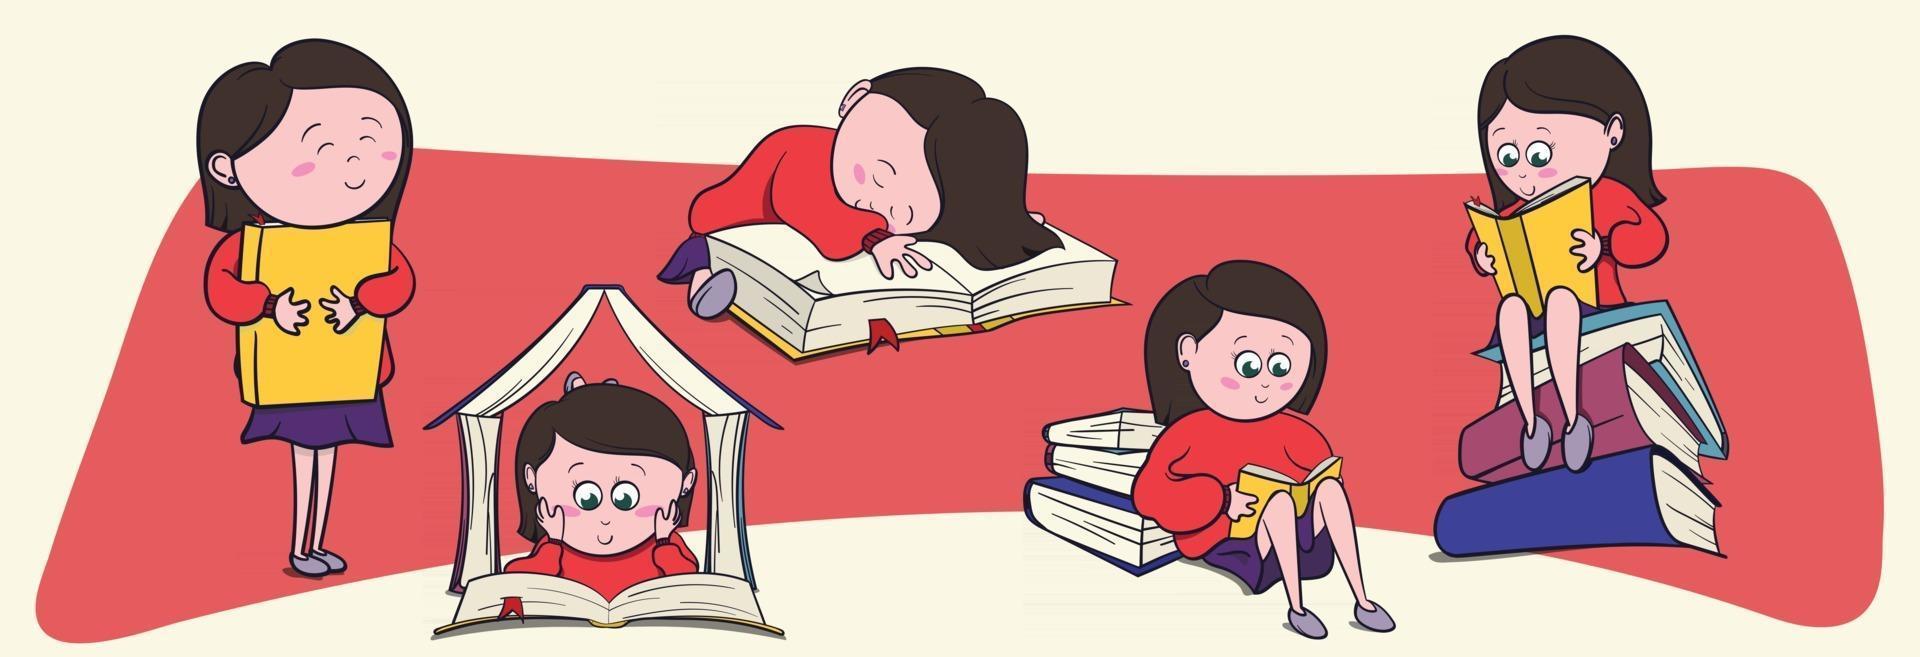 Der süße Buchliebhaber des kleinen Mädchens liest gerne große Bücher und Romane. Bibliophile Illustration im Cartoon-Stil für Graphic Novels. vektor